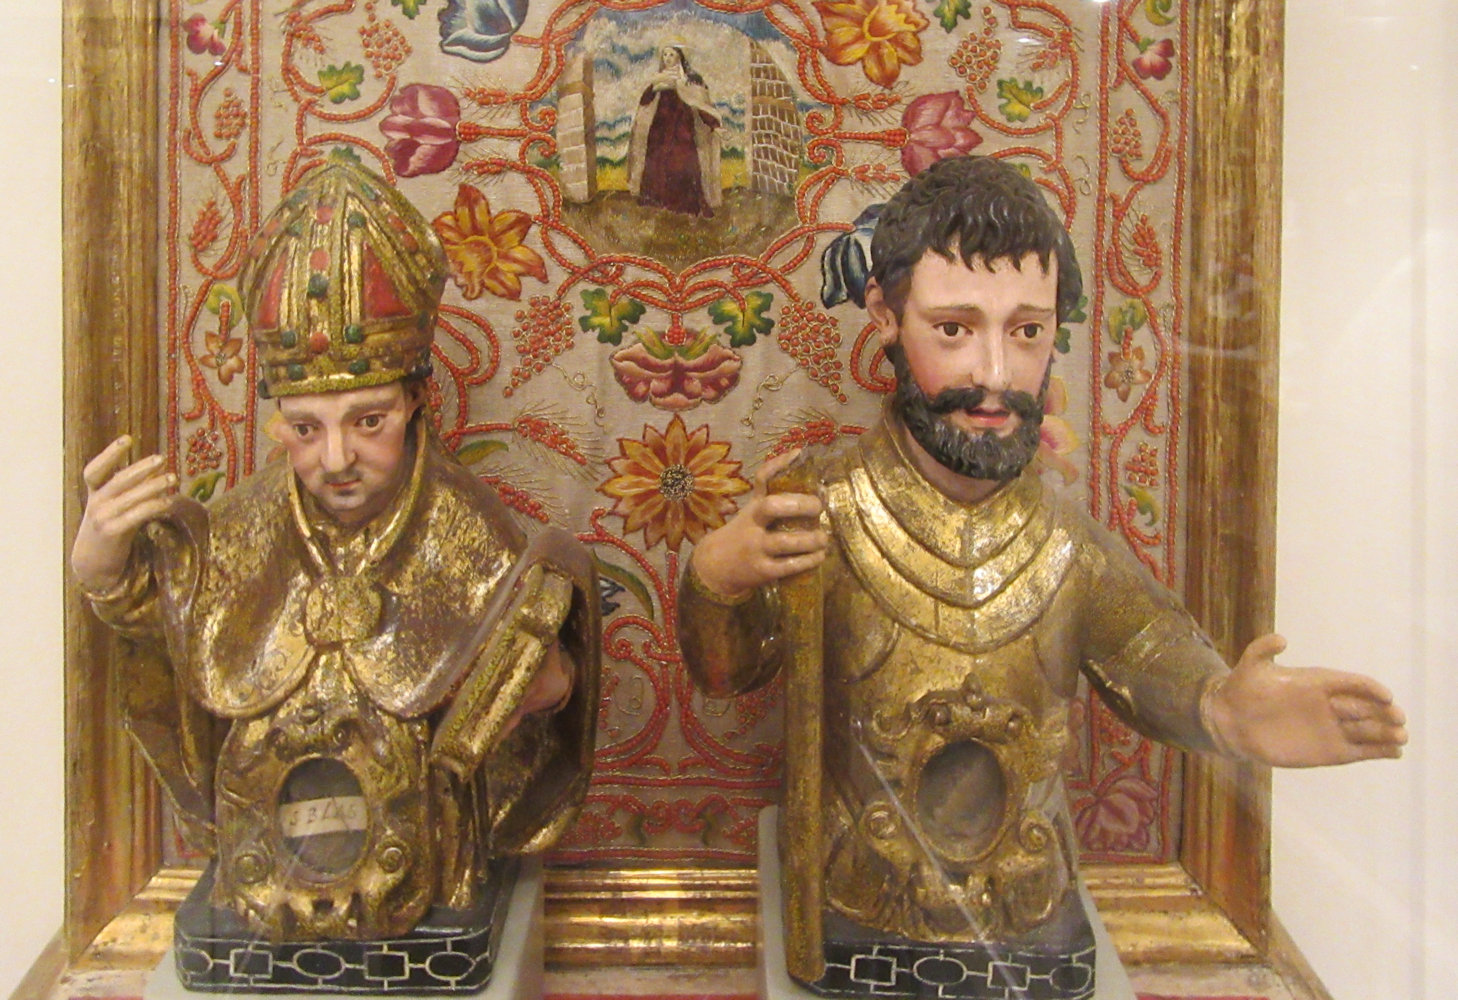 Reliquienbüsten: Rochus und Blasius (links), auf dem Parament im Hintergrund Teresa von Ávila. 17. Jahrhundert, im Museum Santa Teresa in Alba de Tormes